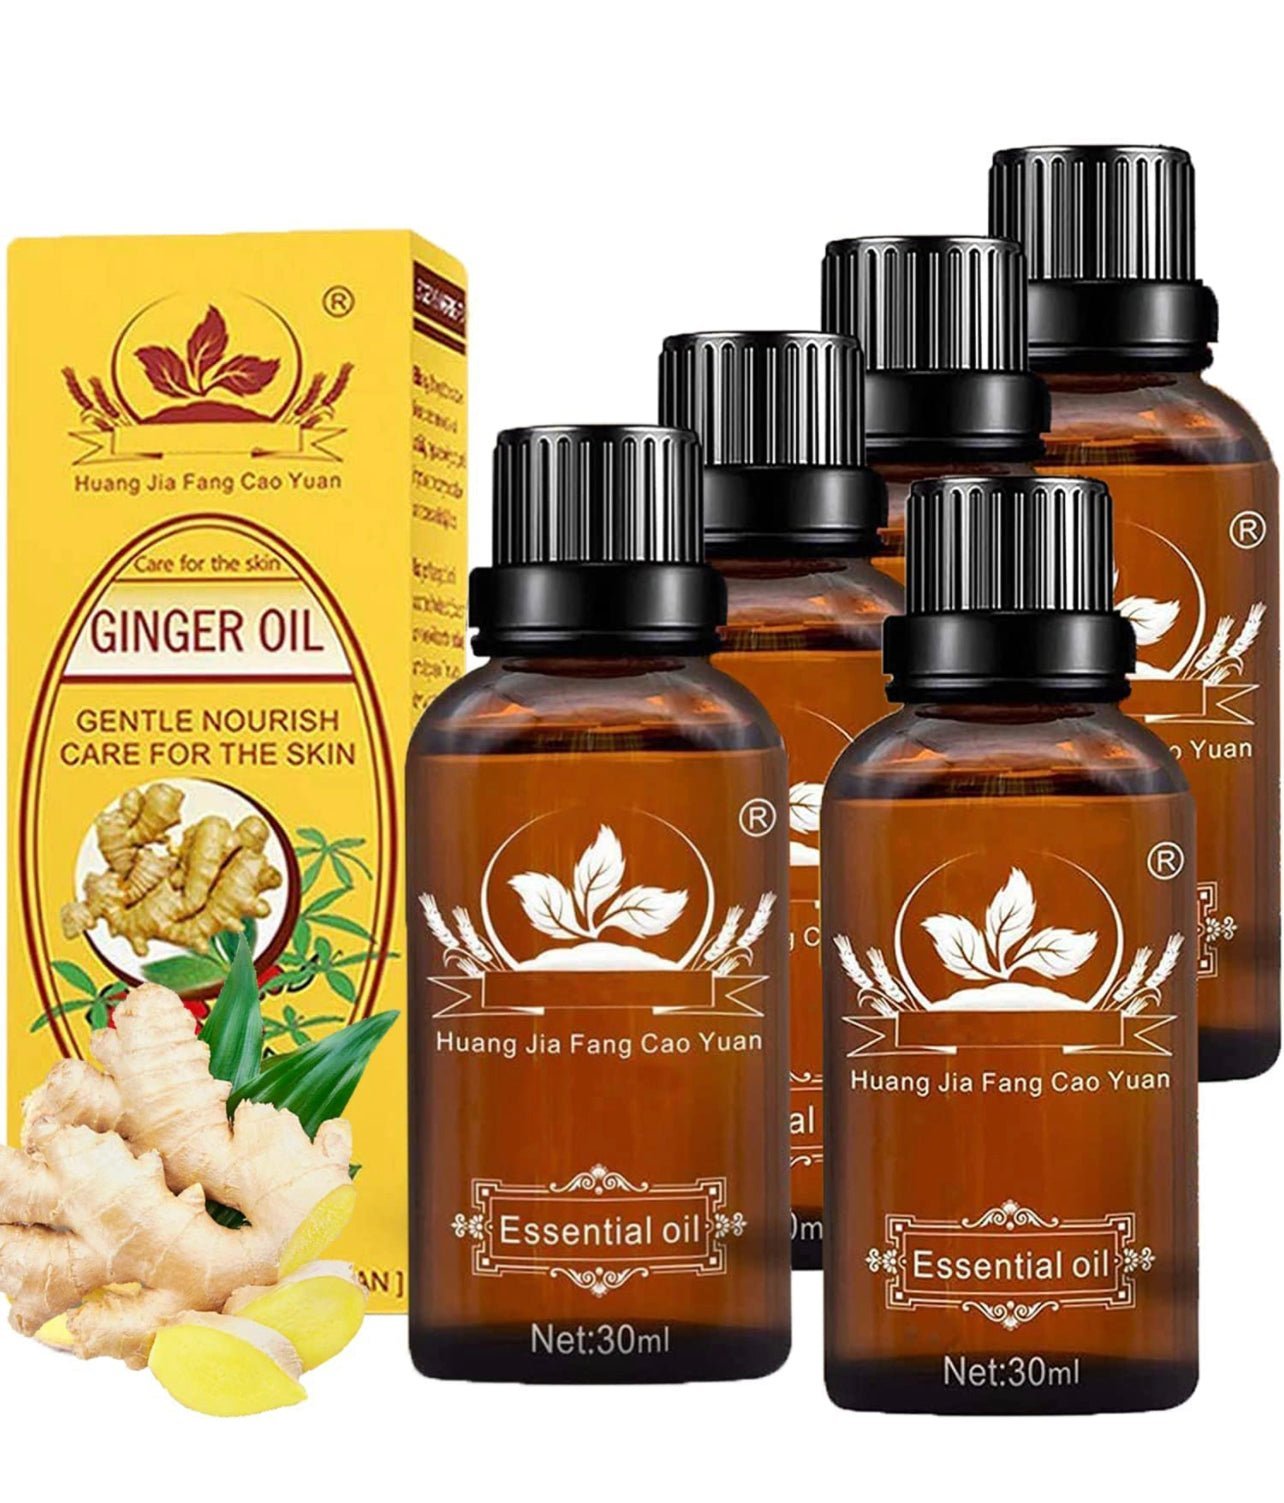 NATURAL ZEBRA | Ginger Essential Oil | 3-Bottles Bundle -